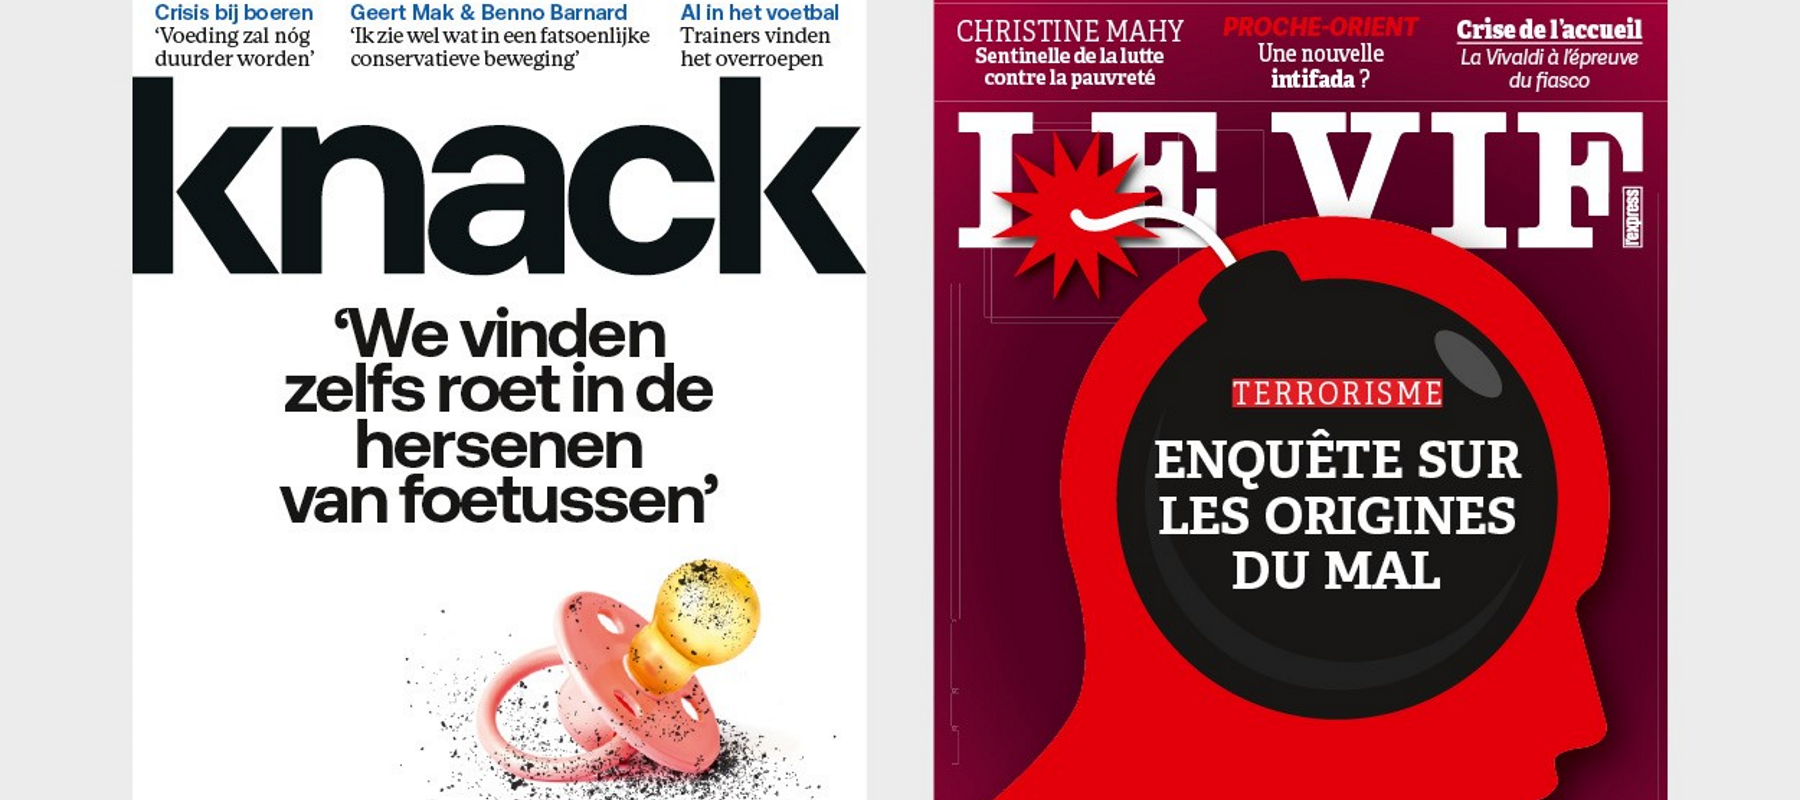 Knack en Le Vif: Sport/Voetbal- en Sport/Footmagazine verschijnen niet langer op papier